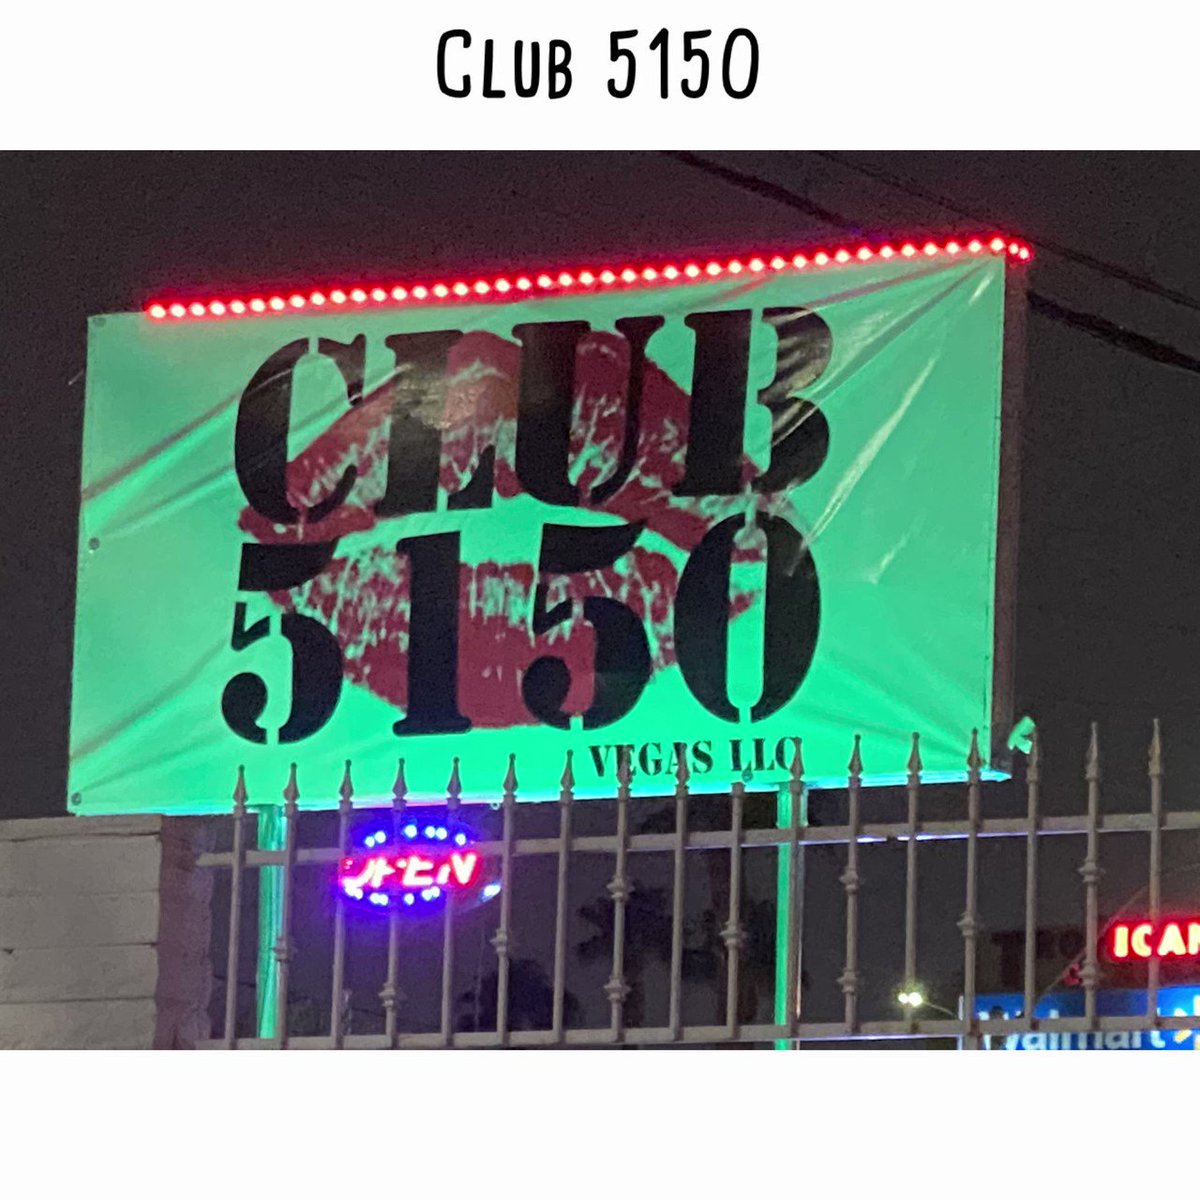 Club 5150 Las Vegas Swingers Club (@Club5150vegas)